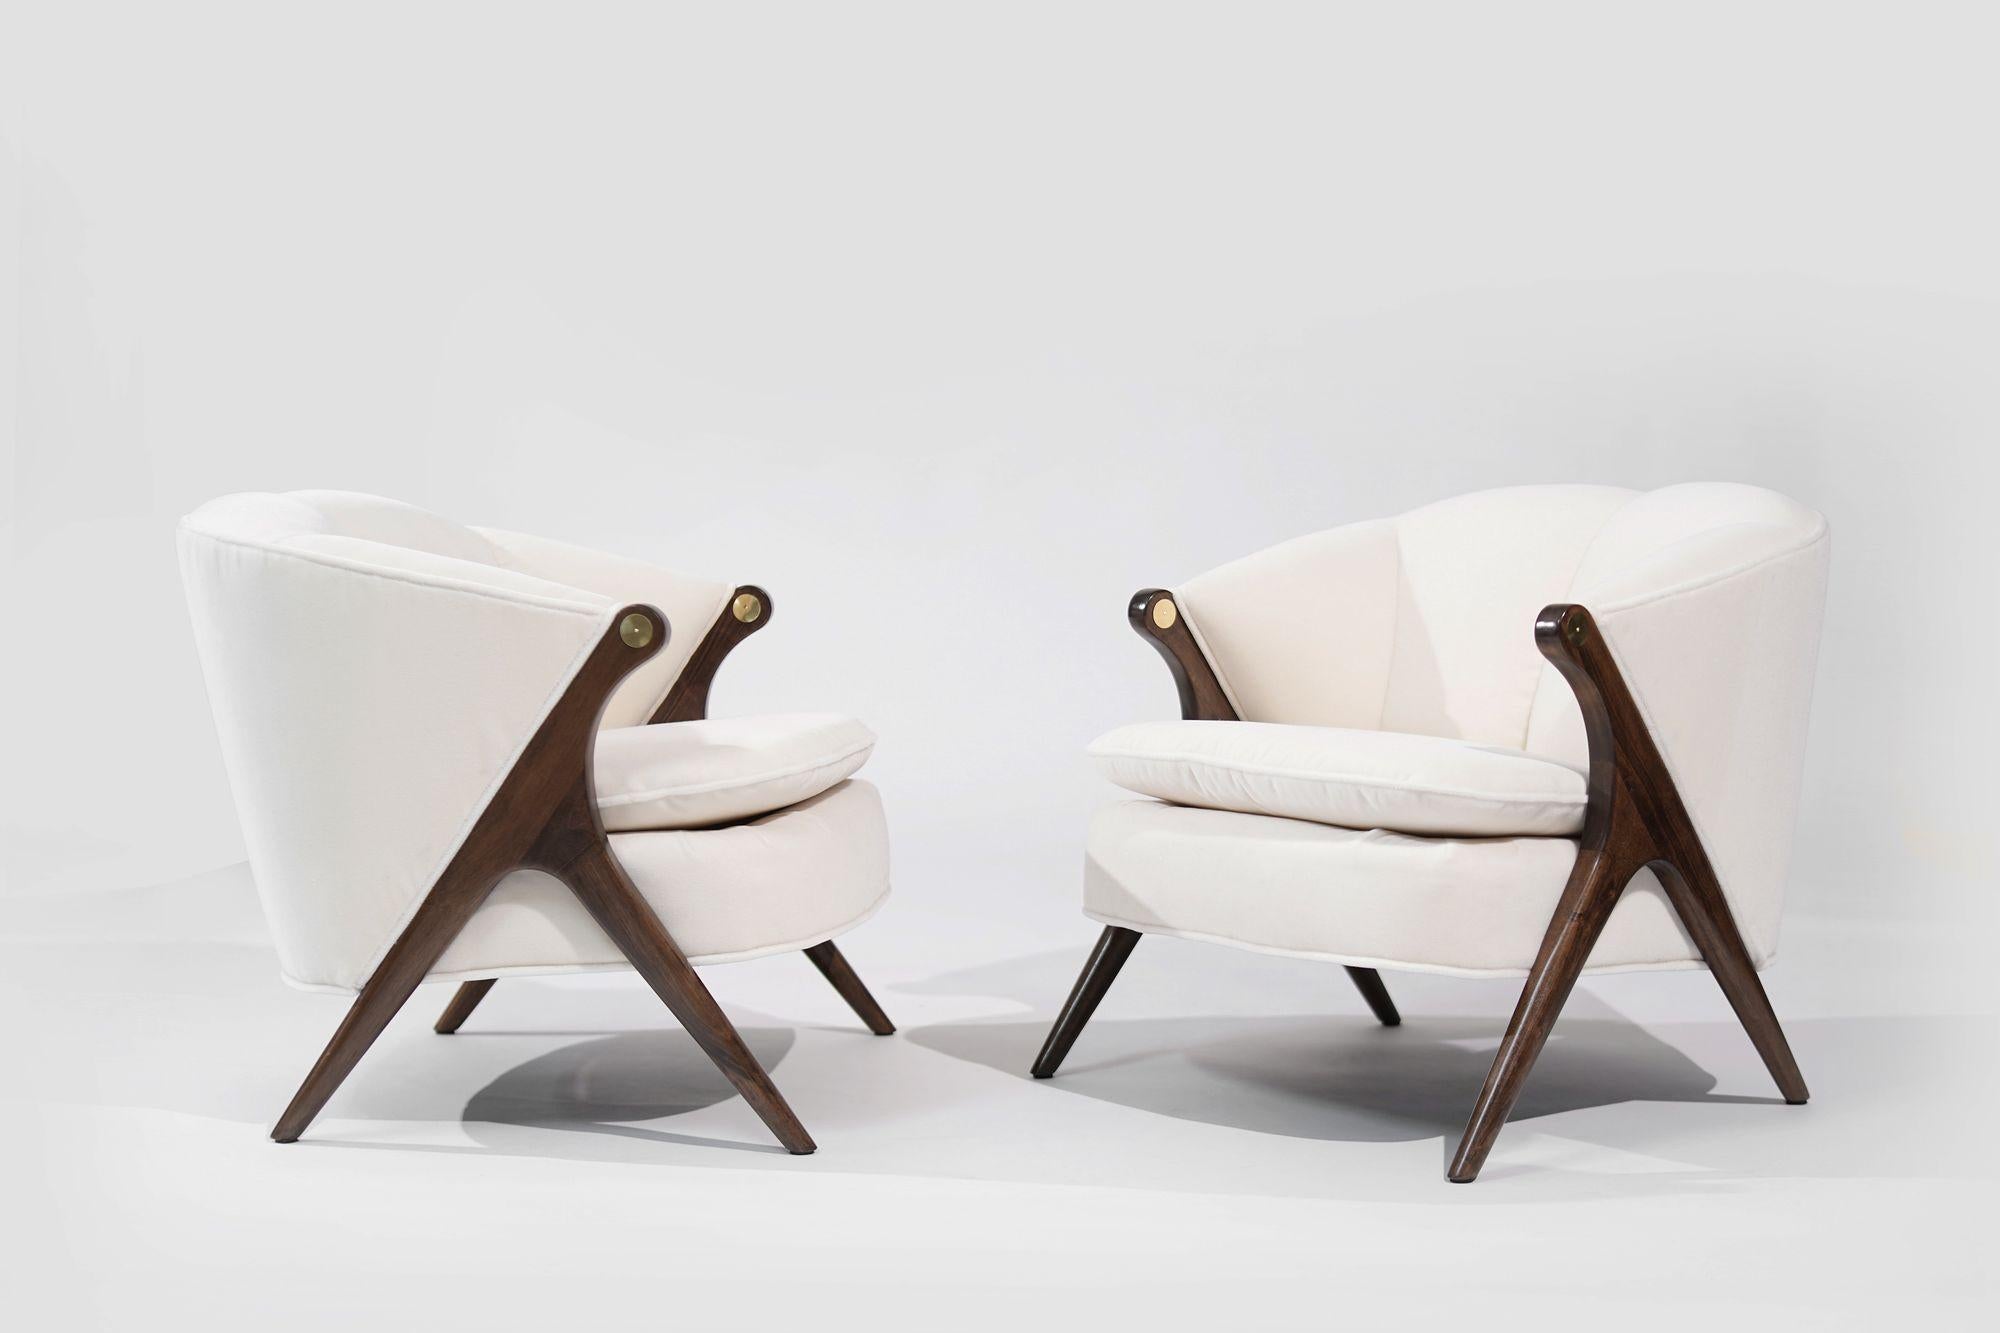 Gönnen Sie sich den Charme der Mitte des Jahrhunderts mit diesem makellos restaurierten Satz Lounge Chairs von Karpen of California aus den 1950er Jahren, die von Stamford Modern wieder zum Leben erweckt wurden. Die mit luxuriösem, cremefarbenem